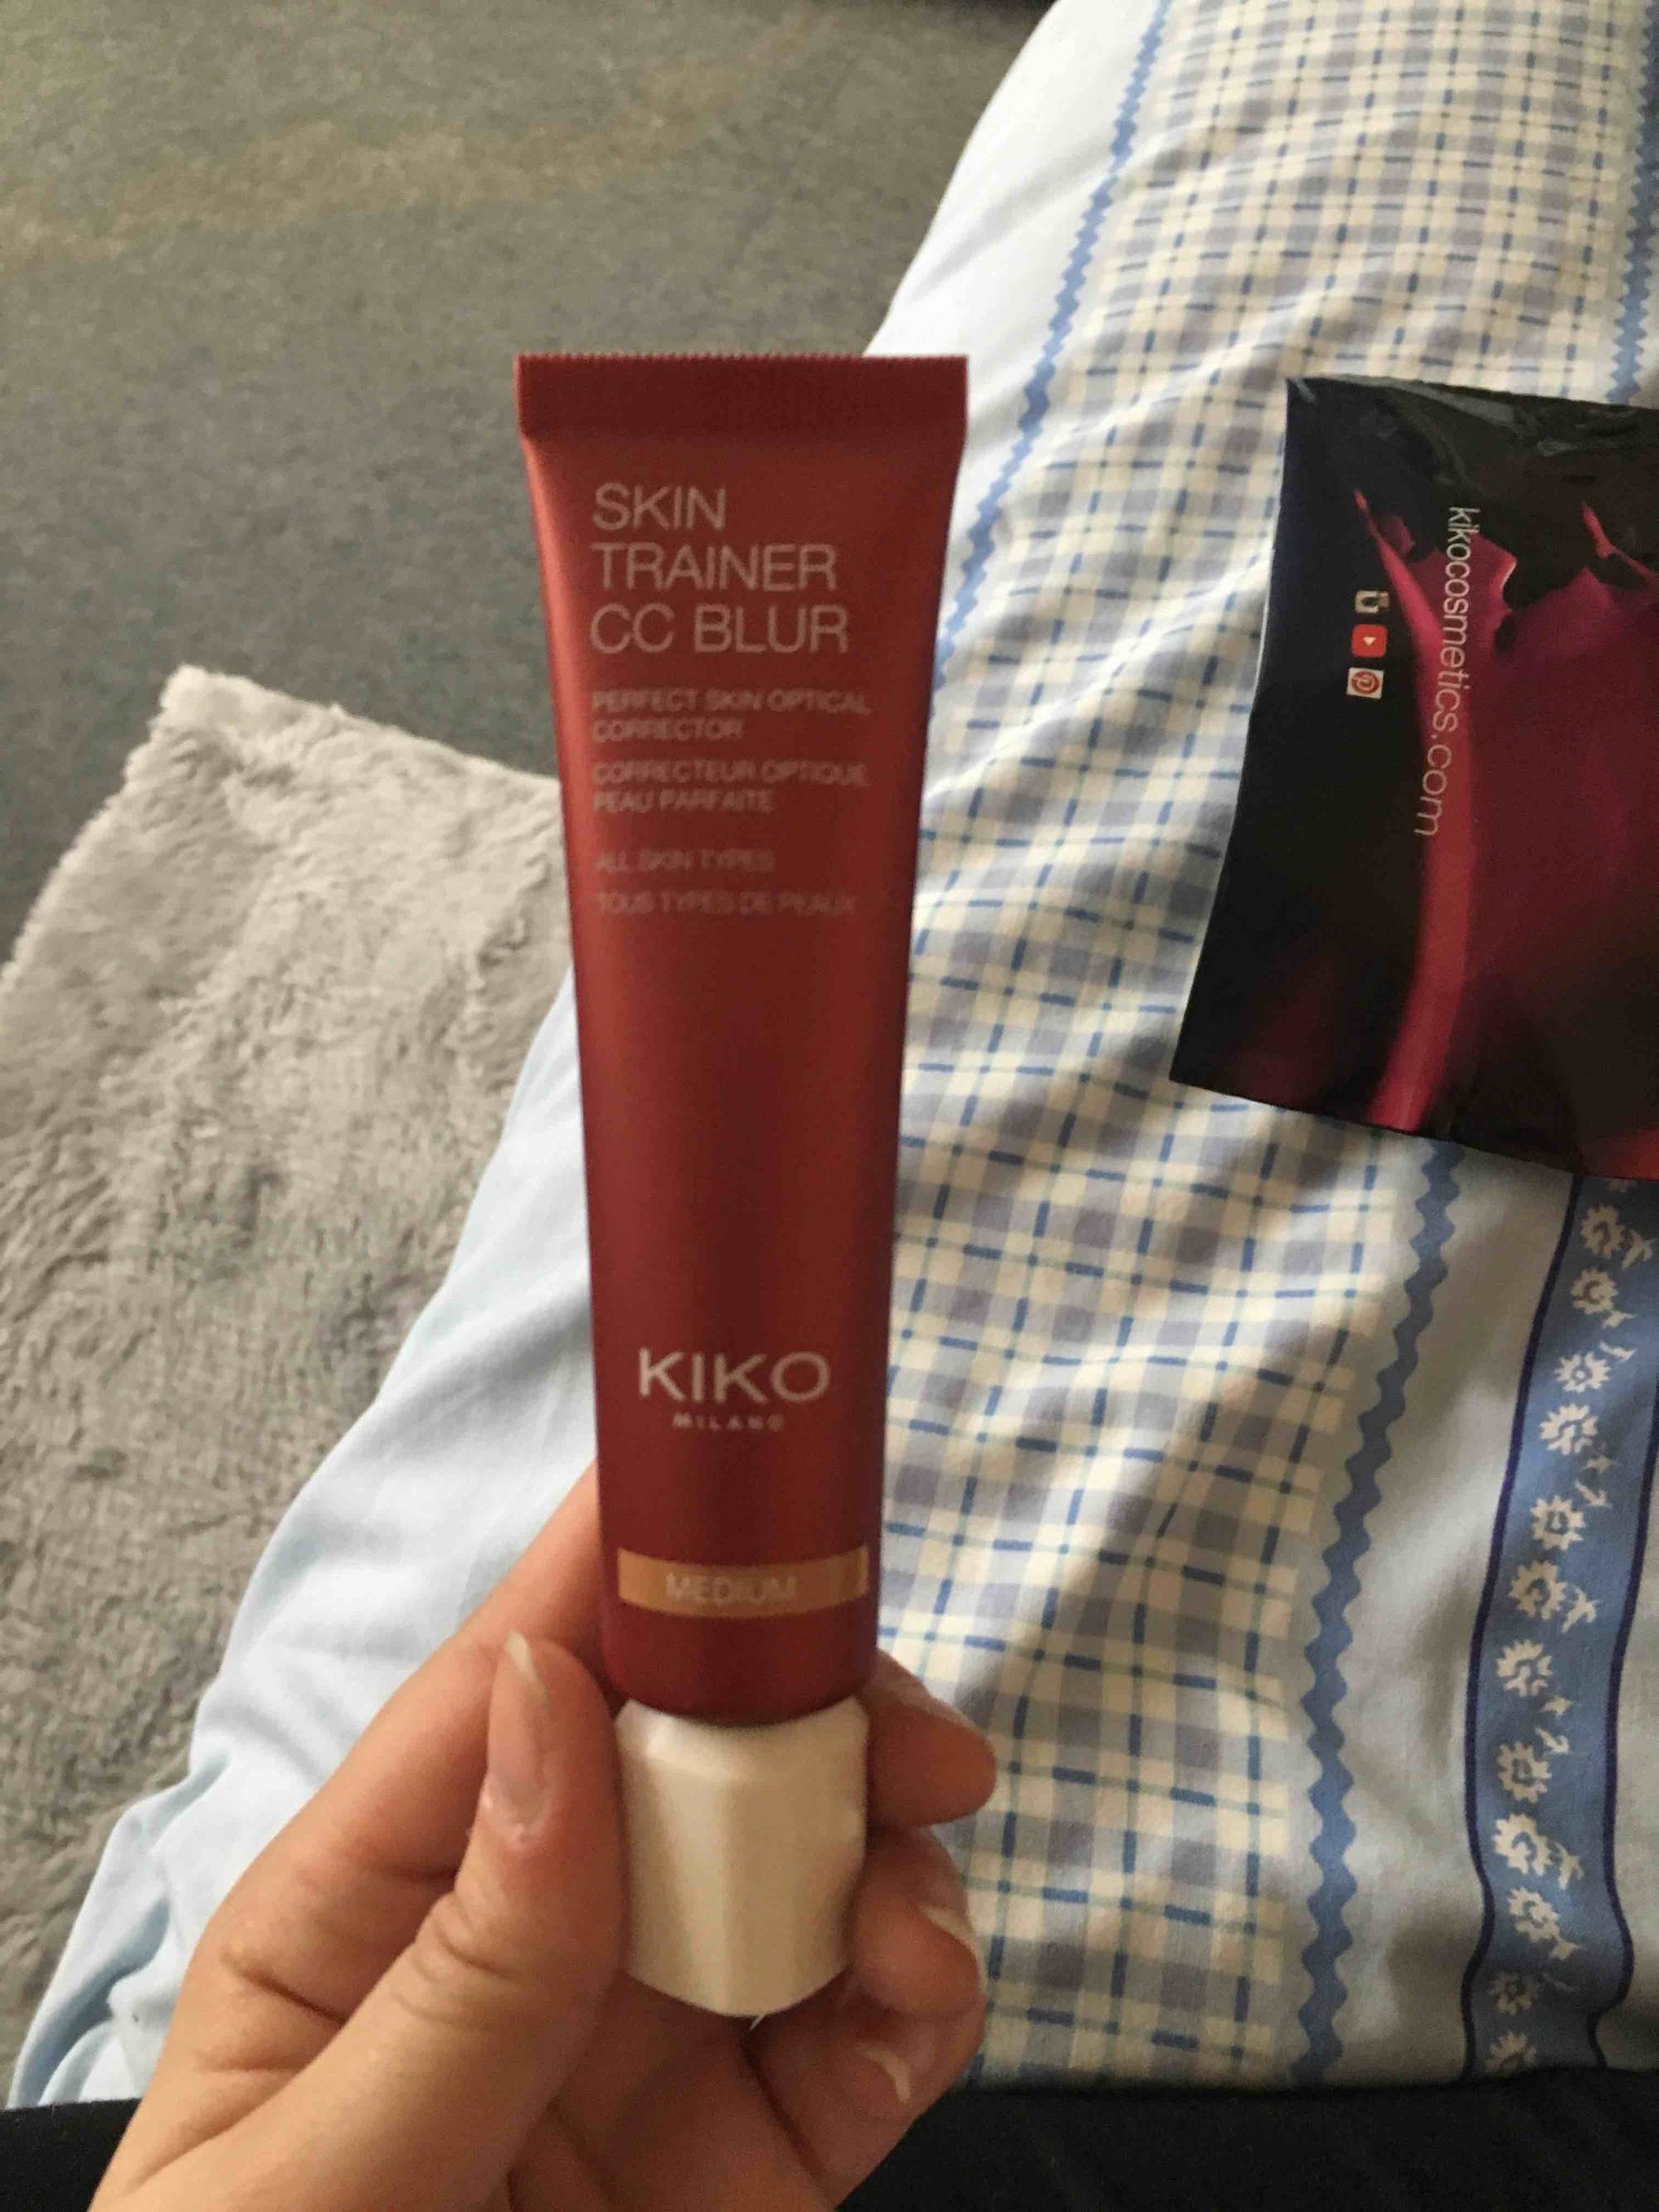 KIKO - Skin trainer CC blur - Correcteur optique peau parfaite